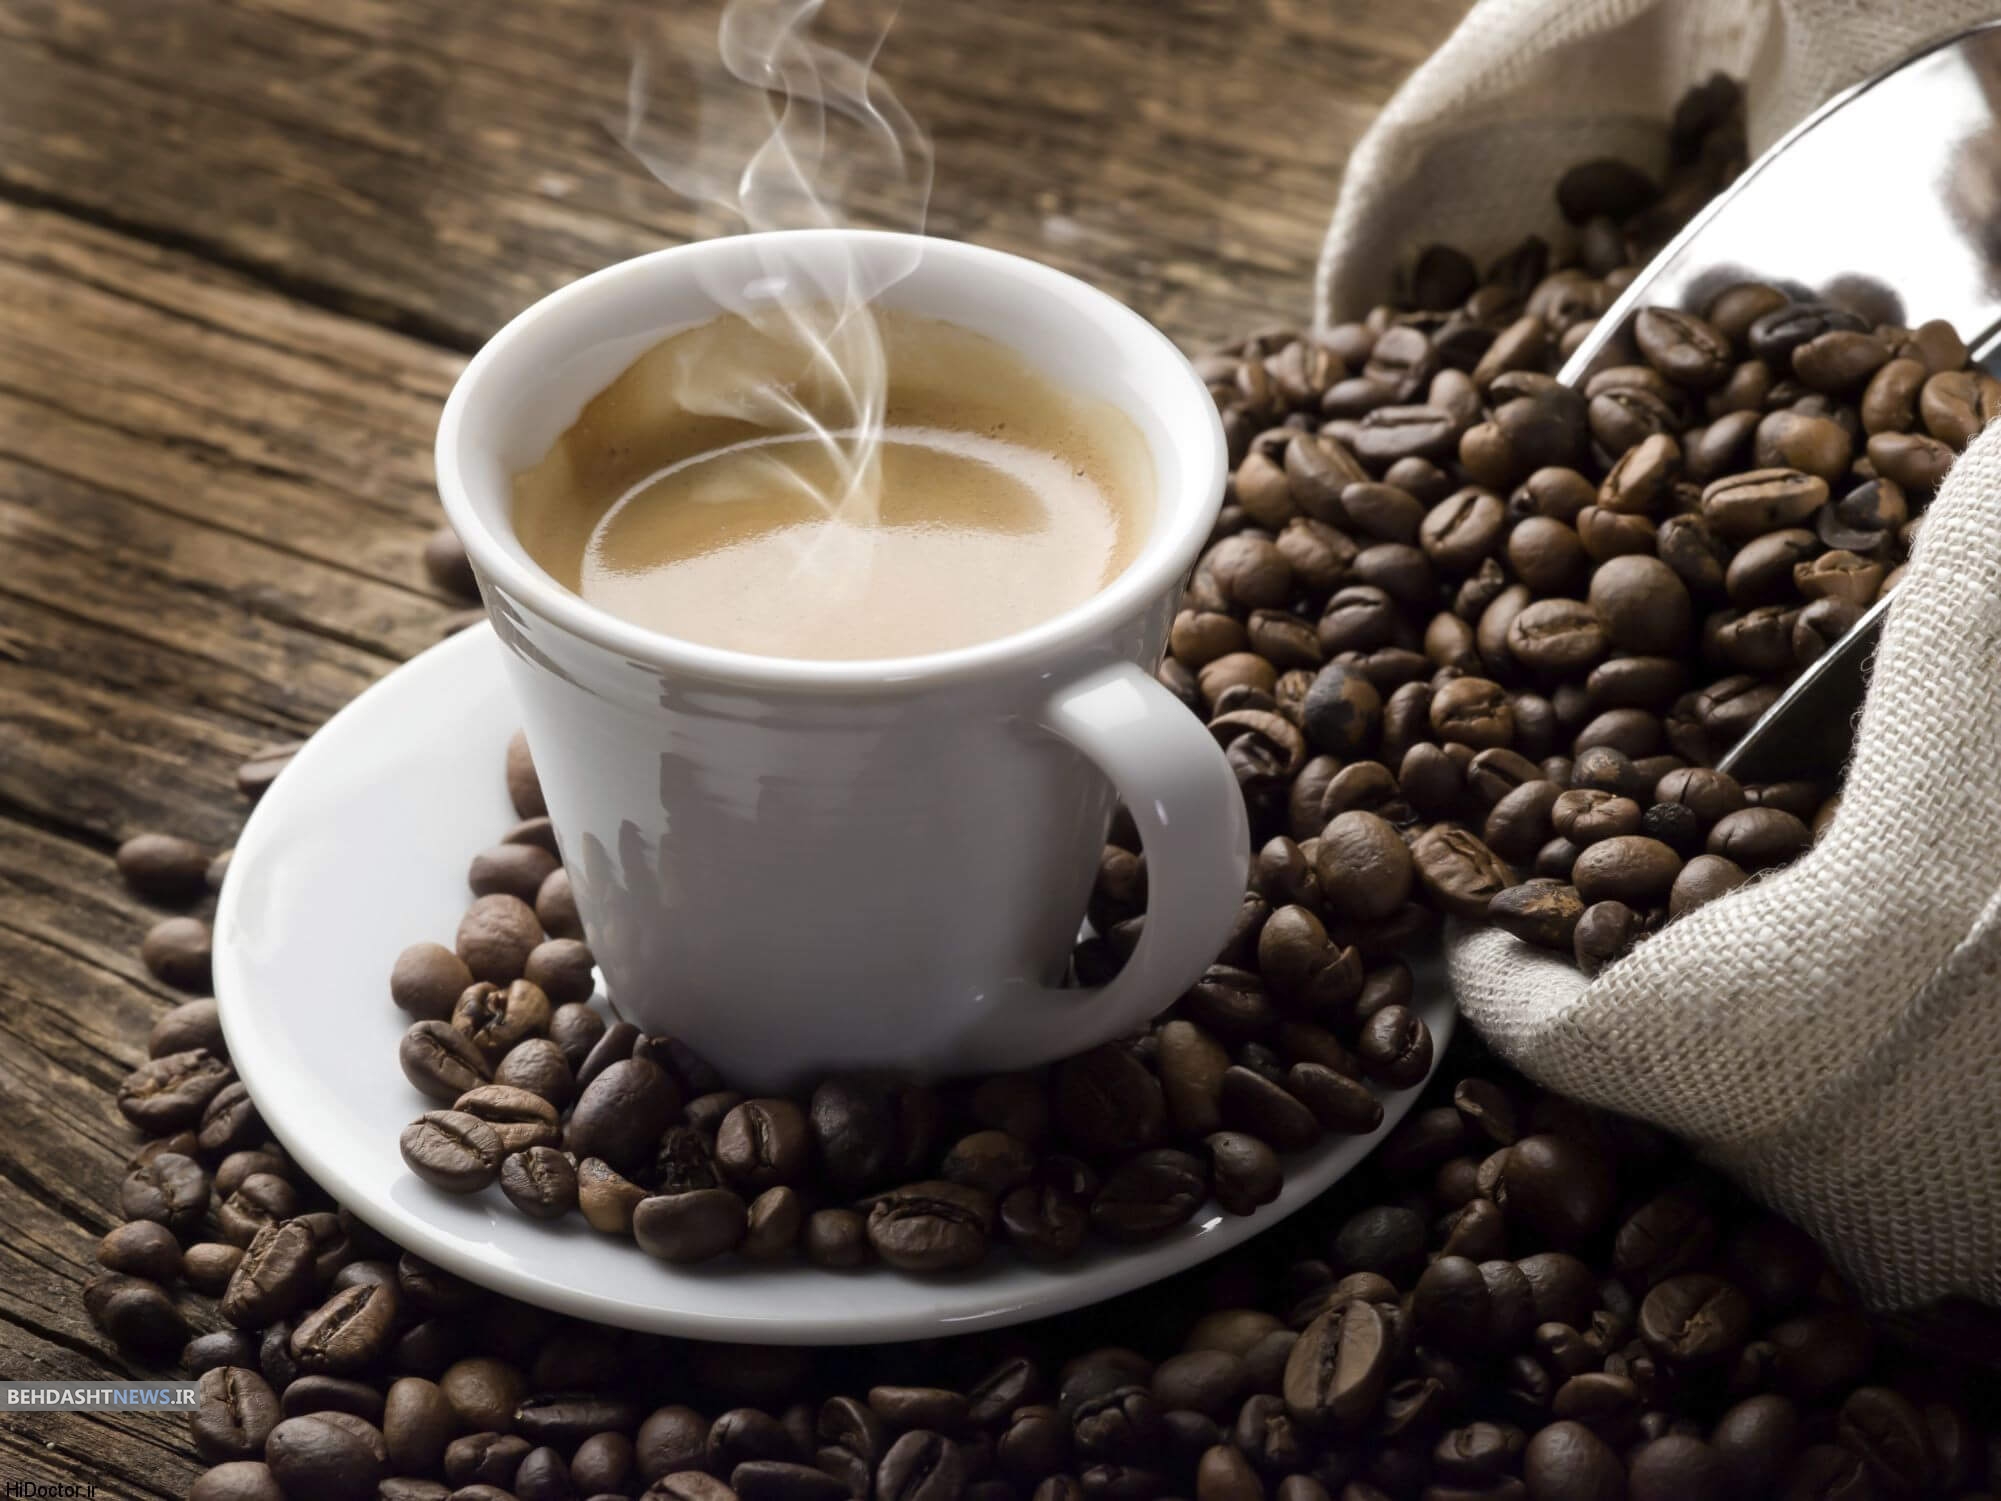  نقش حفاظتی چای و قهوه در مقابله با رژیم غذایی پرچرب غربی